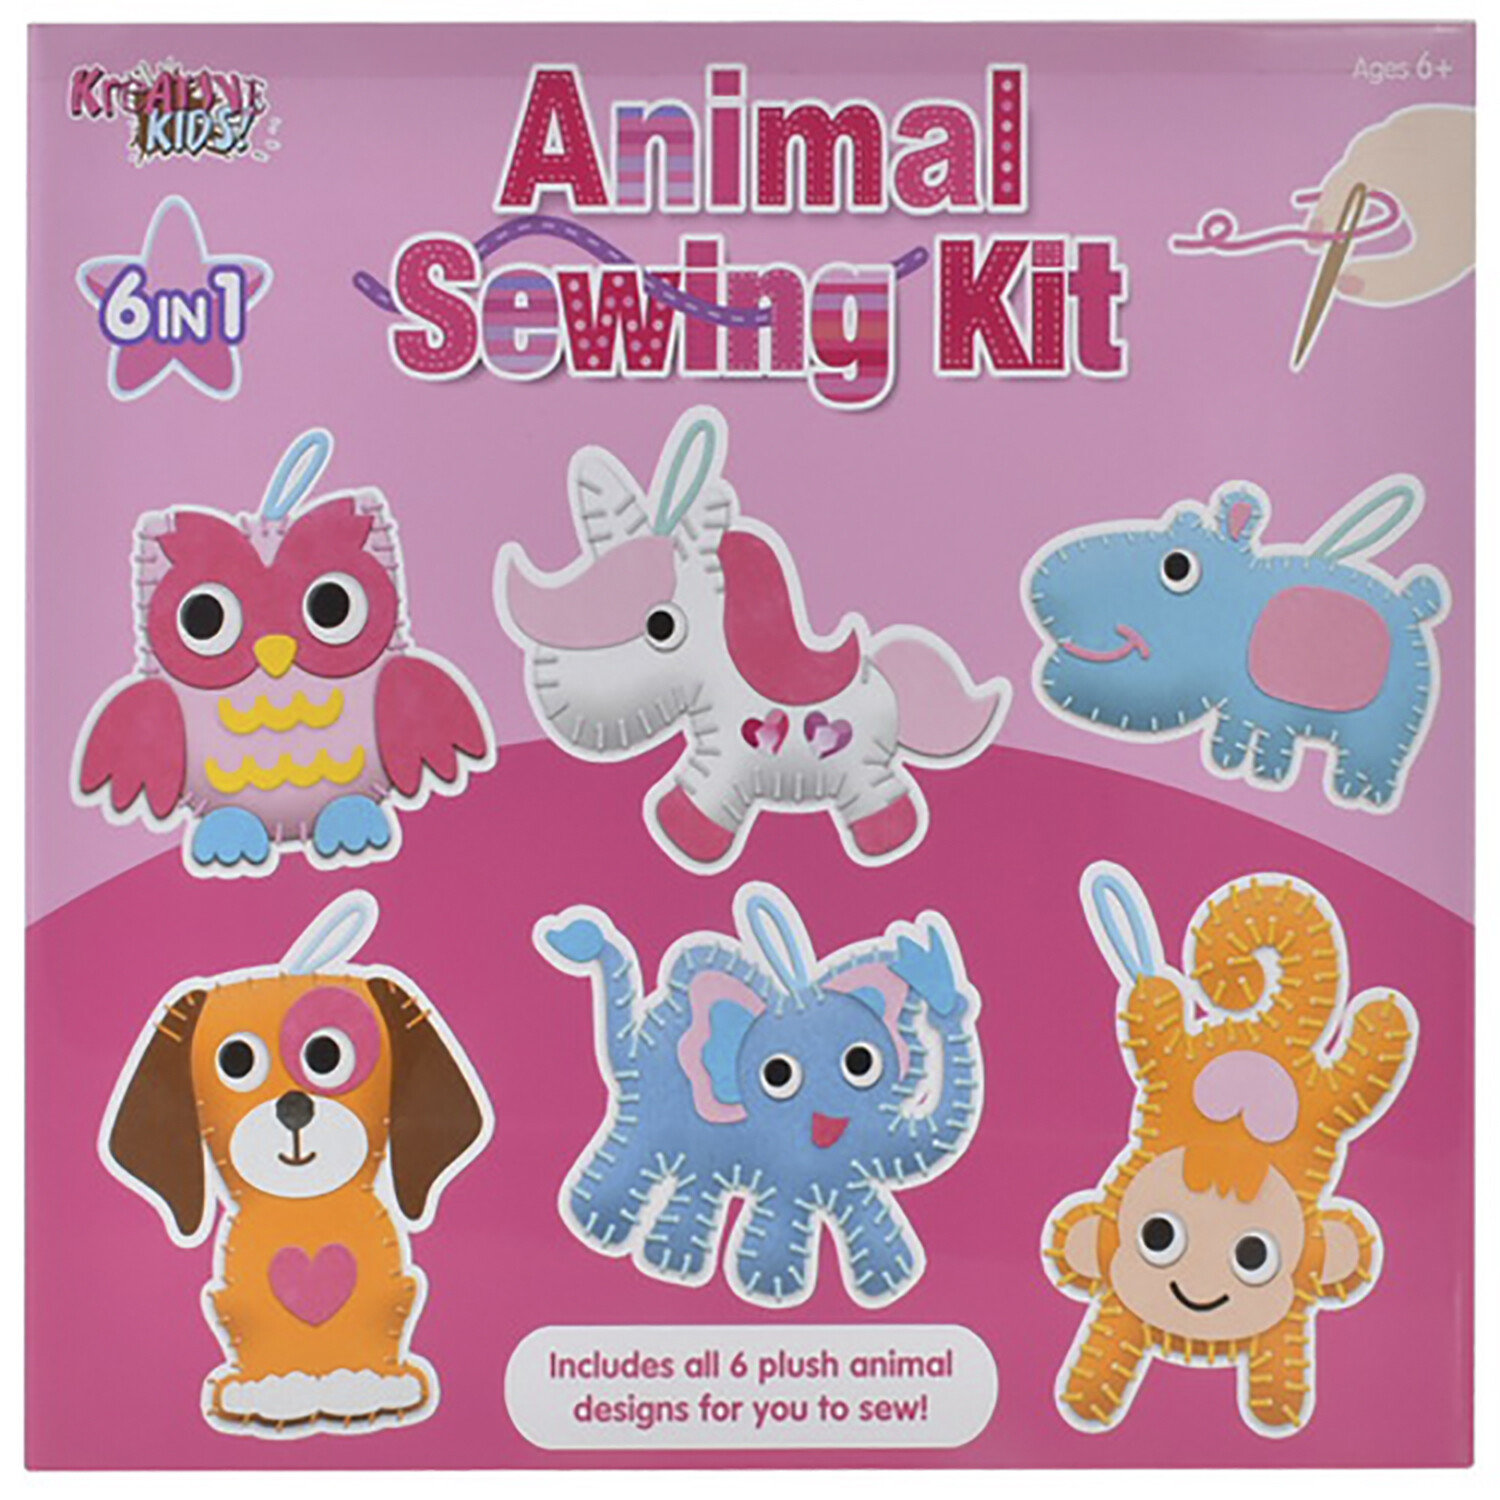 Kreative Kids Animal Sewing Kit Image